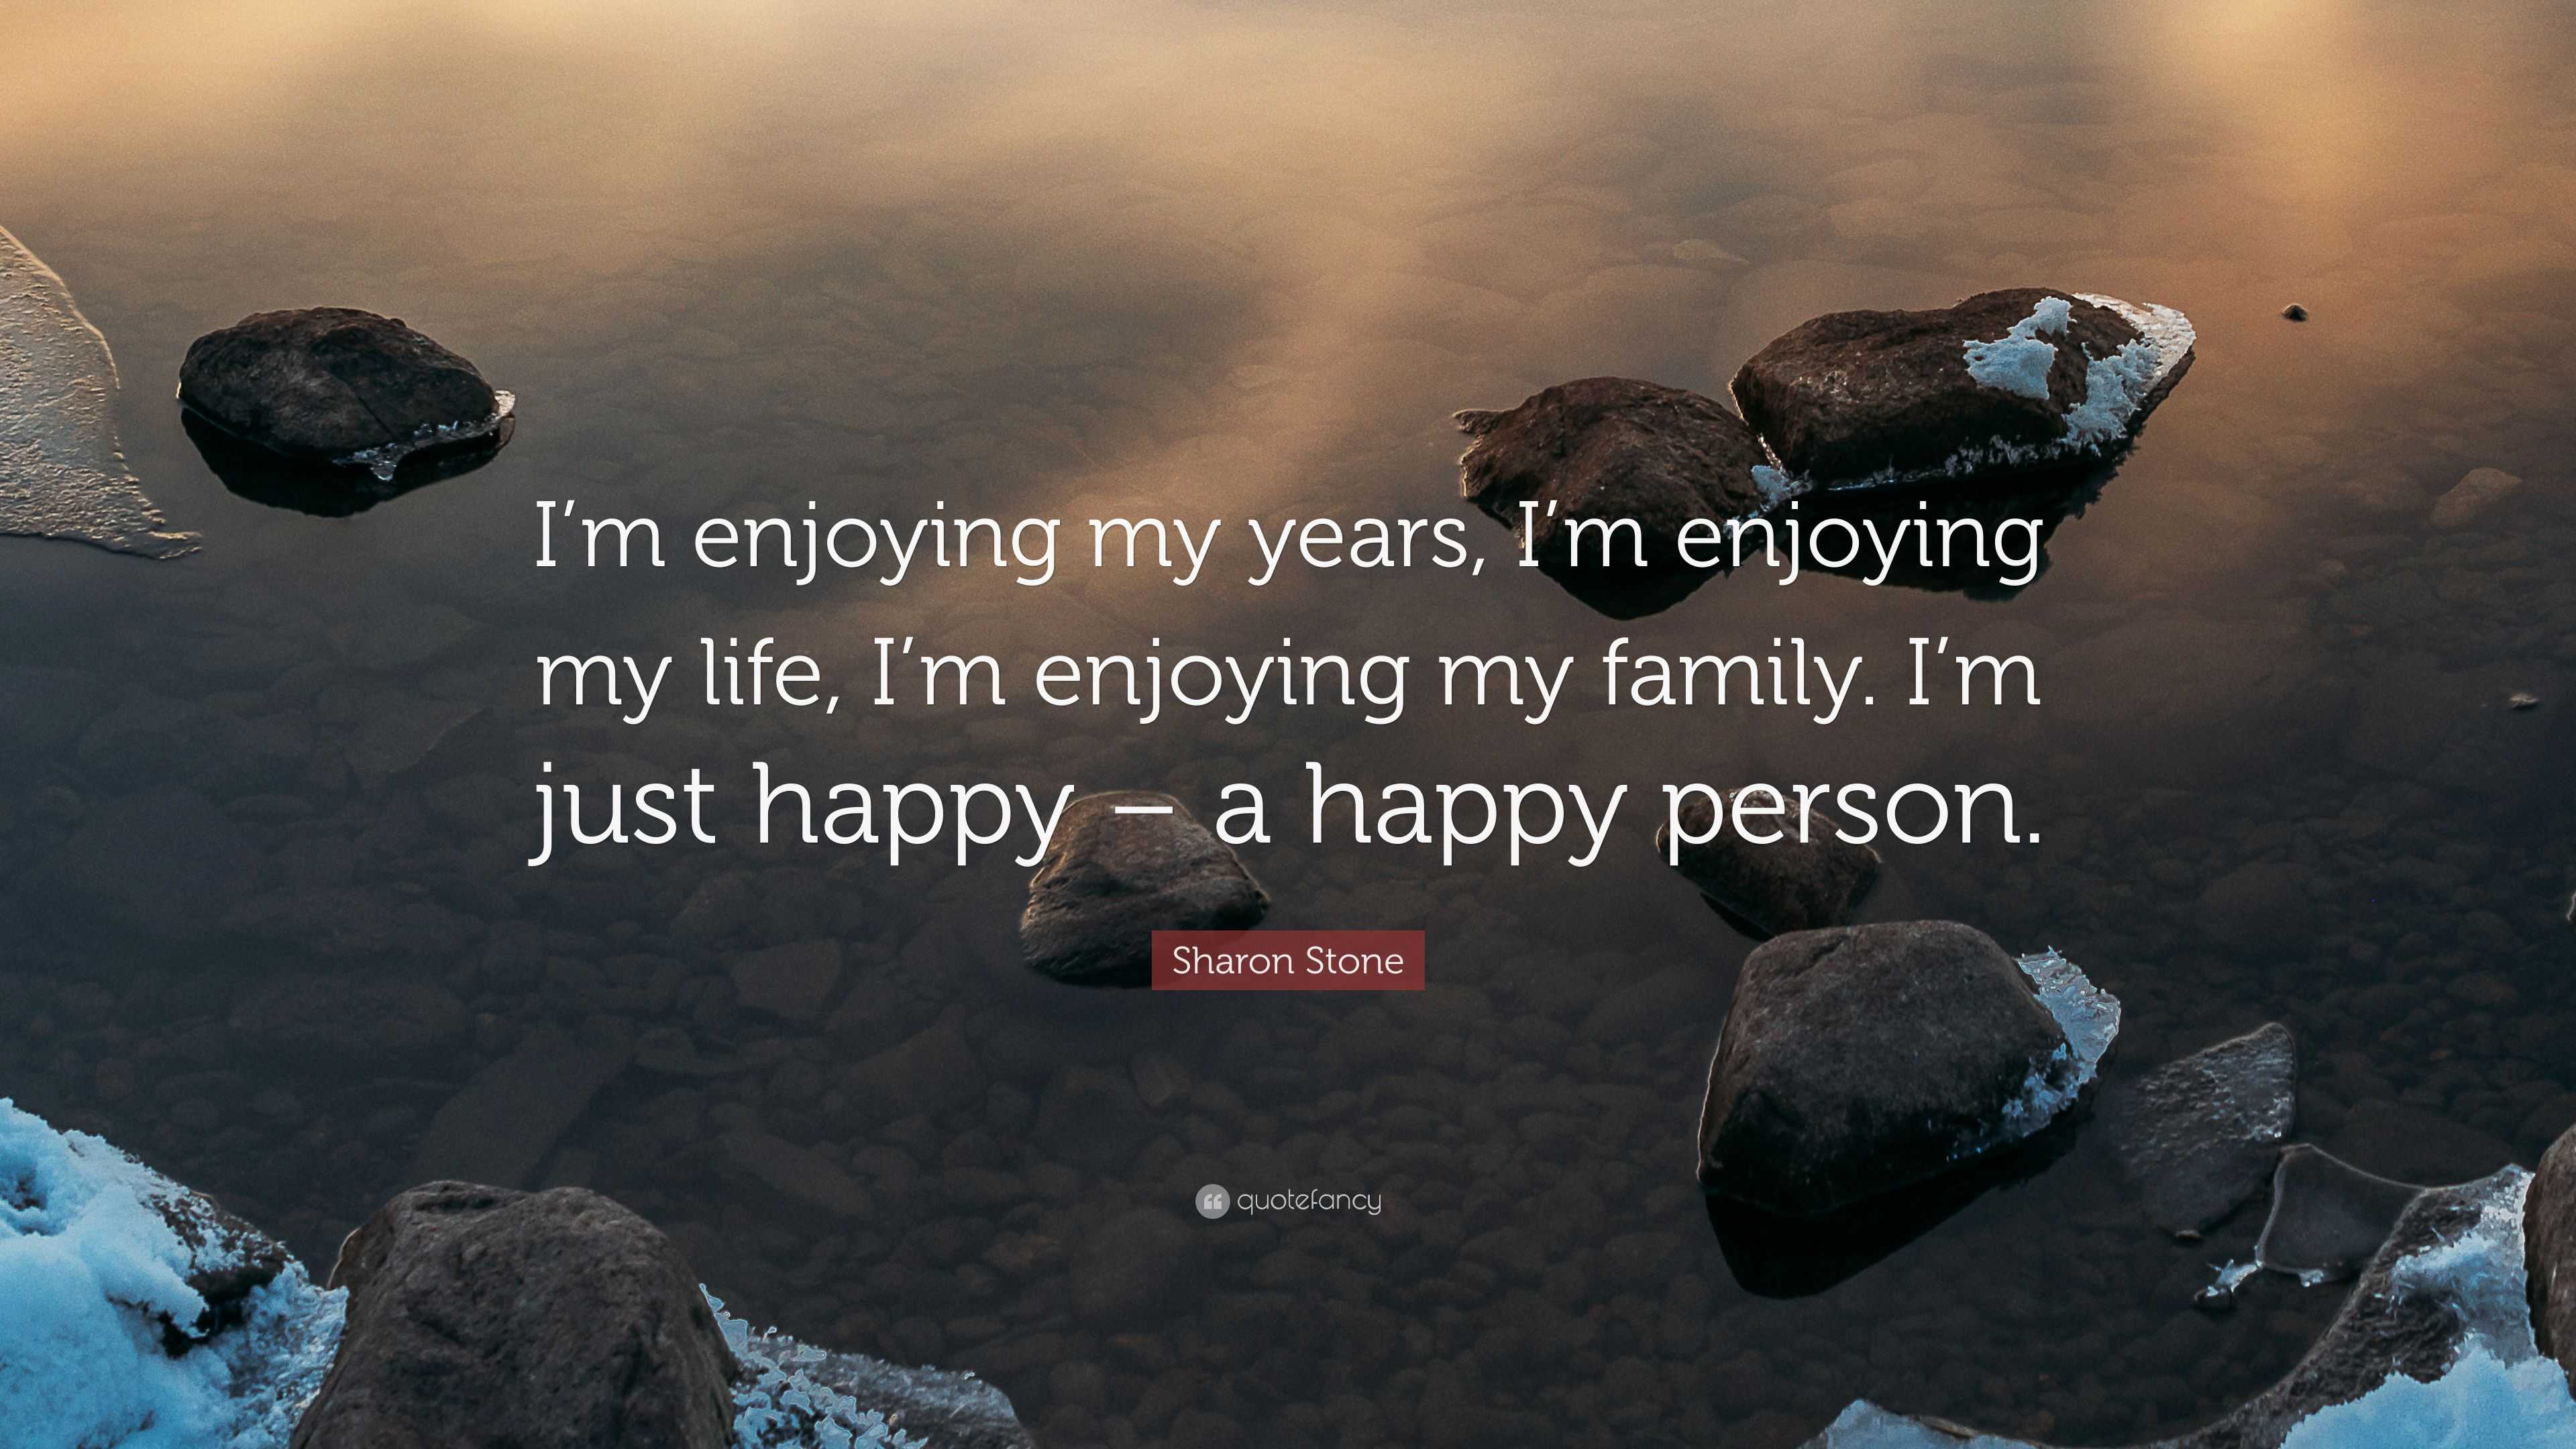 I'm enjoying my years, I'm enjoying my life, I'm enjoying my family. -  IdleHearts